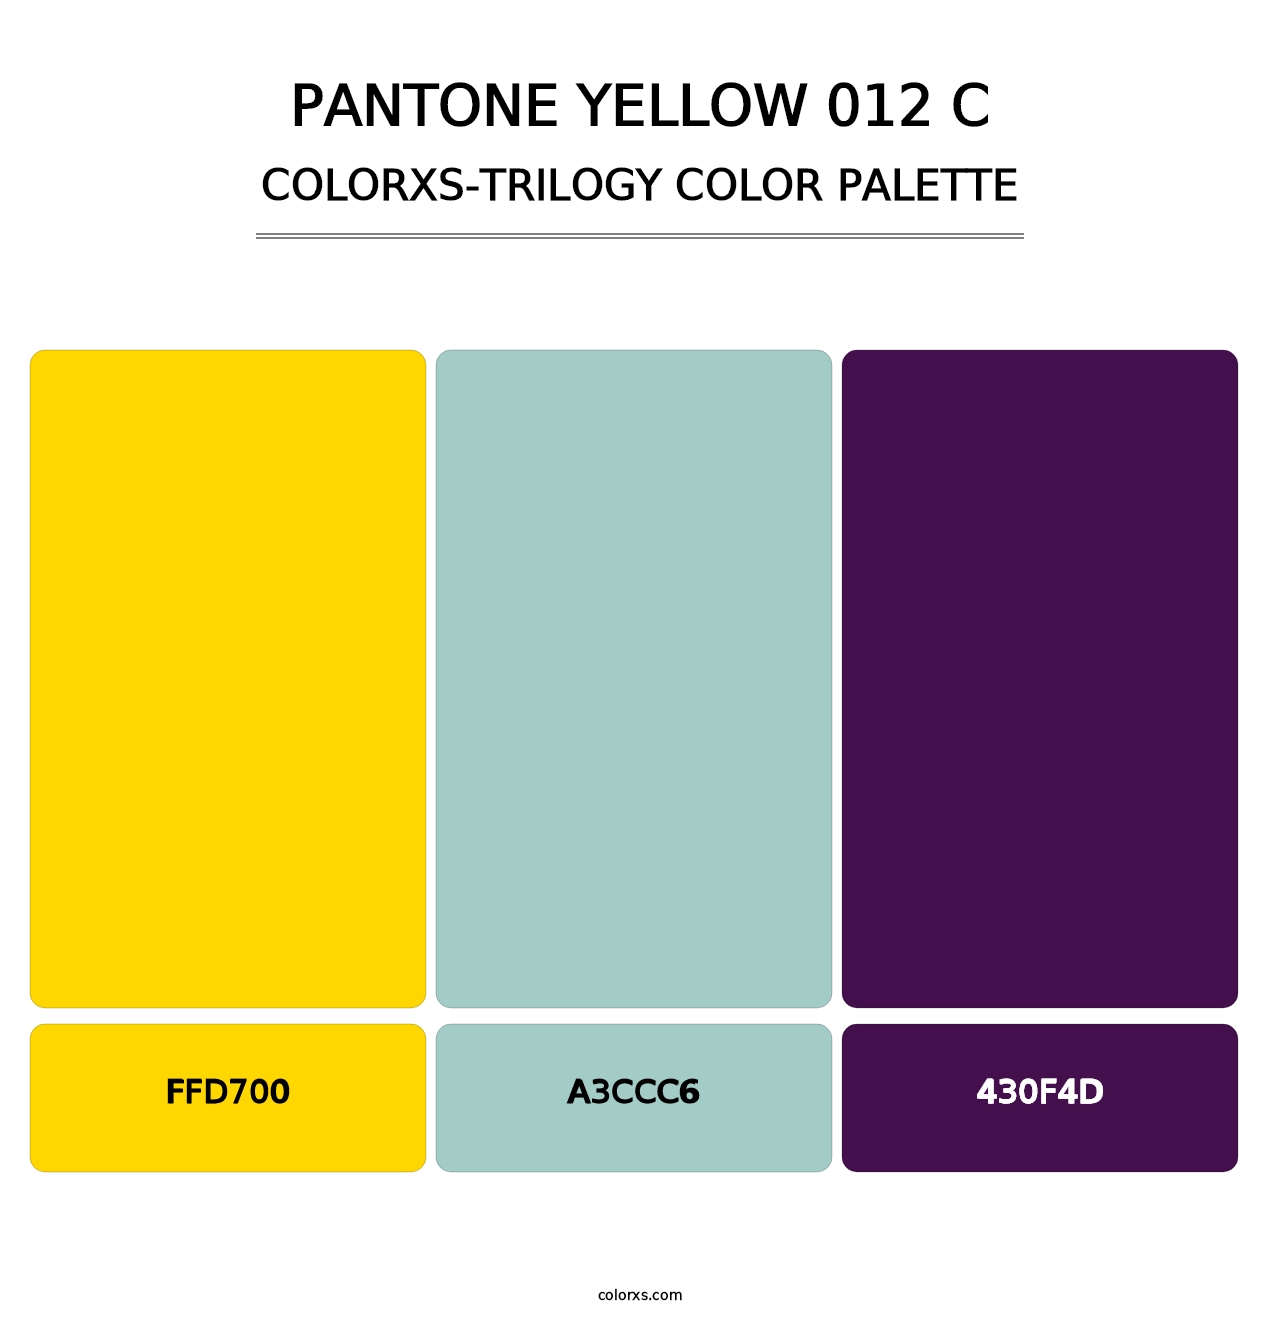 PANTONE Yellow 012 C - Colorxs Trilogy Palette